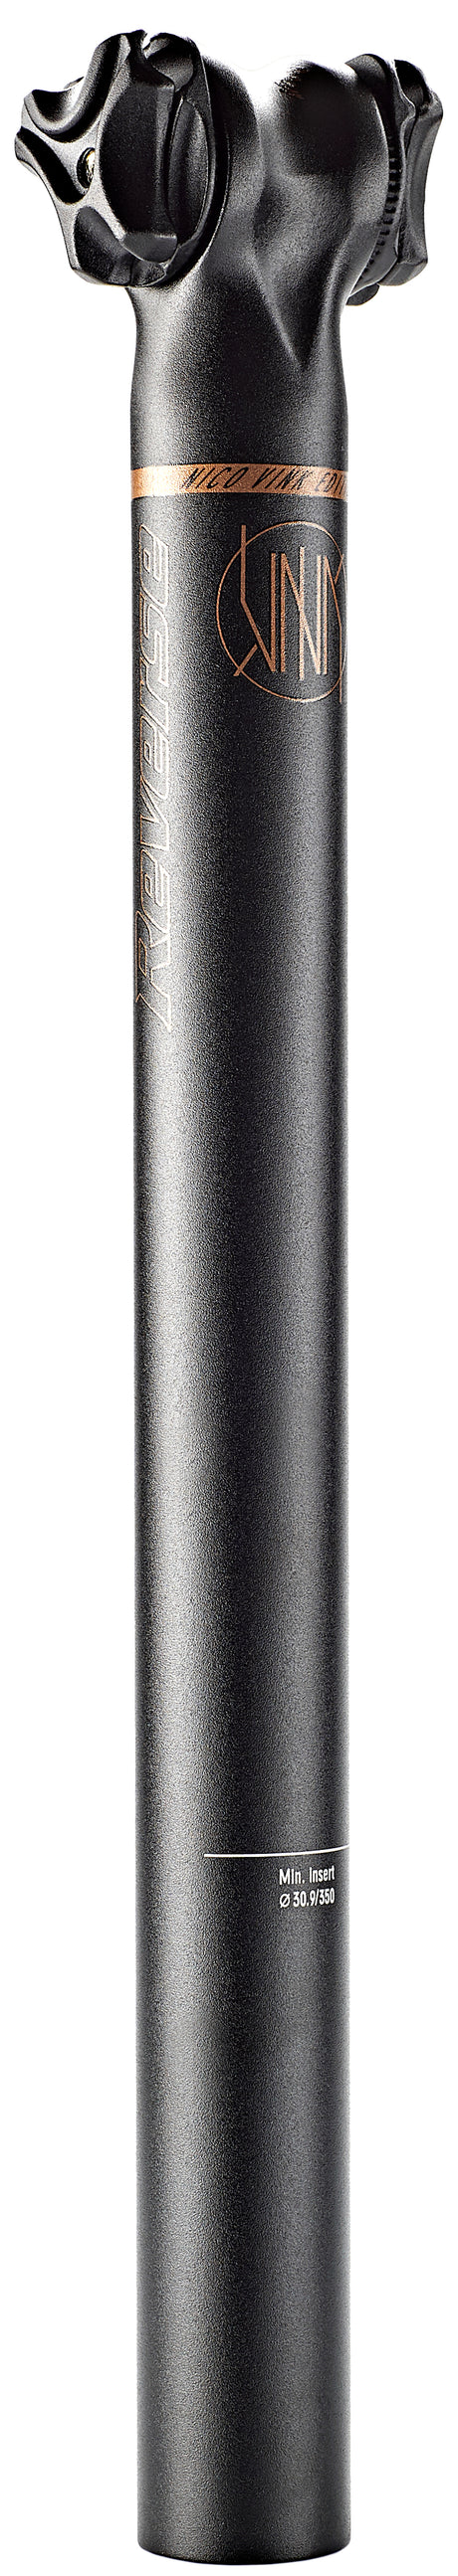 Reverse Nico Vink Sattelstütze Ø30,9mm schwarz/braun